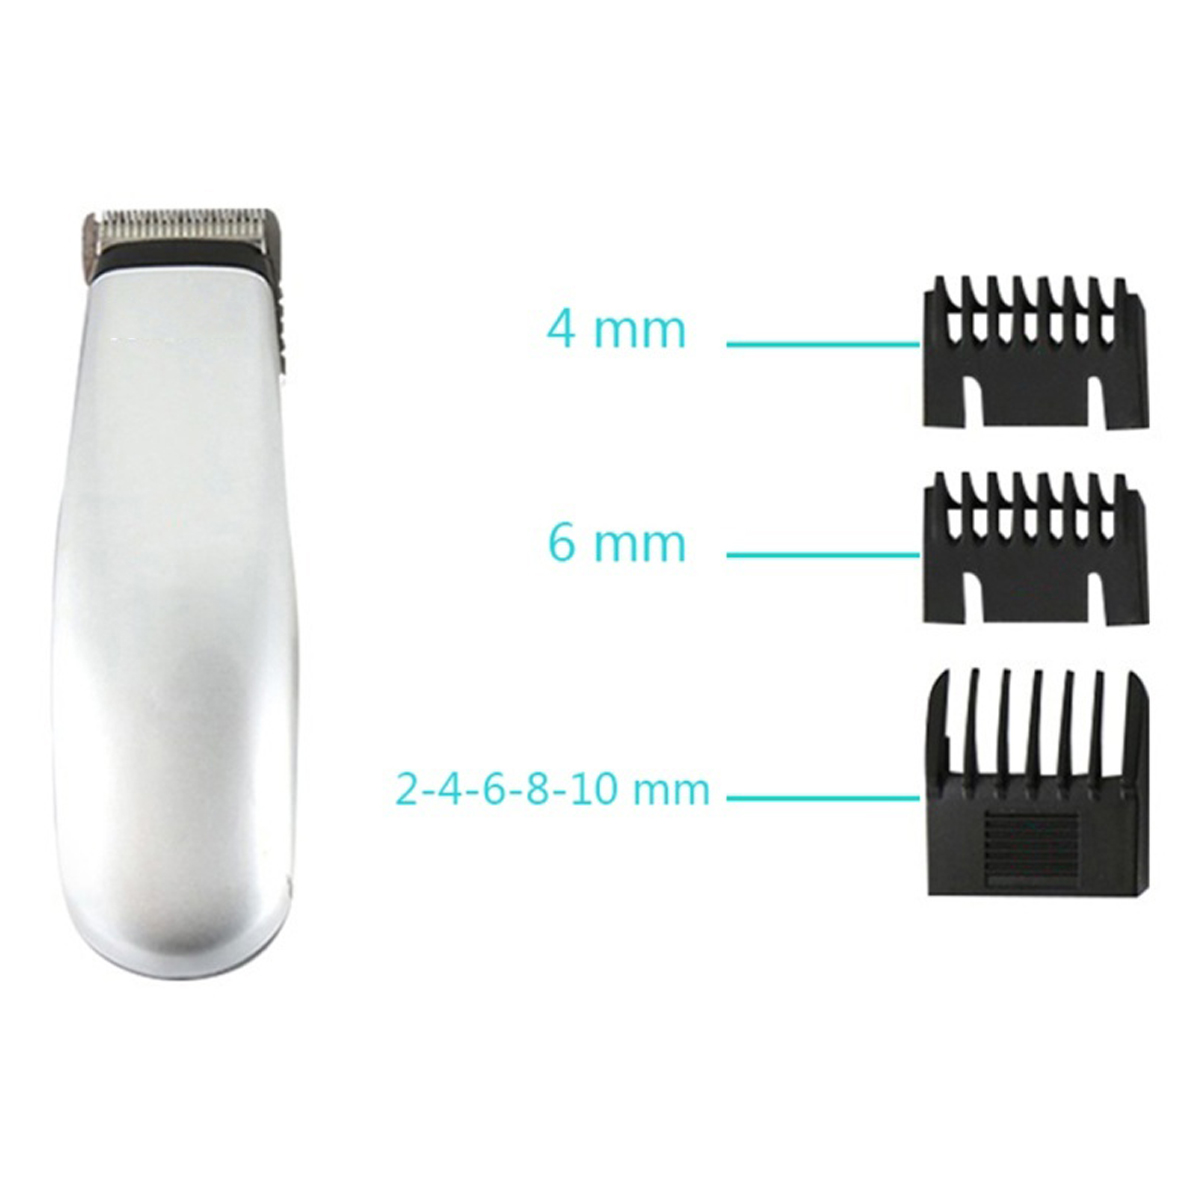 Electric Hair Trimmer KM-666 Hair Clipper Hair Cutter Dry Battery Mini Clipper